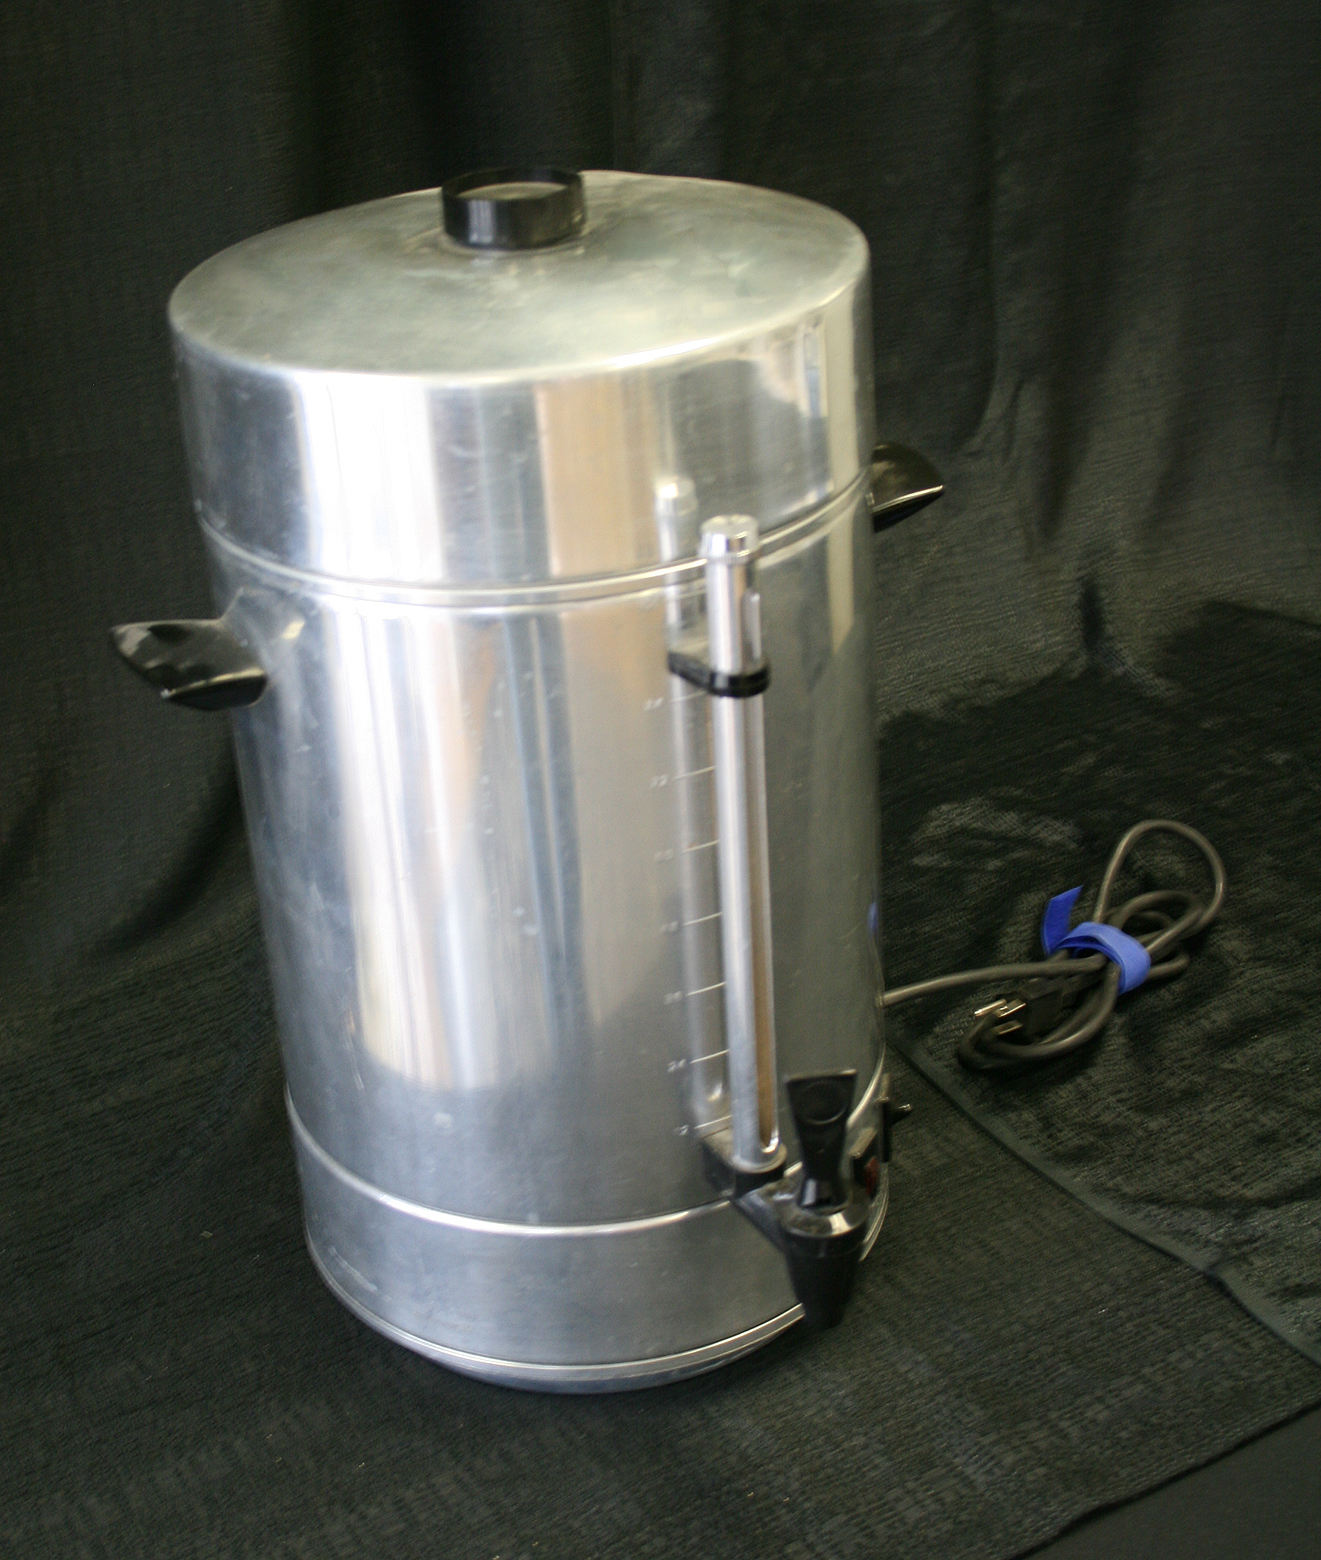 100-cup-coffee-maker-urn-rental.jpg